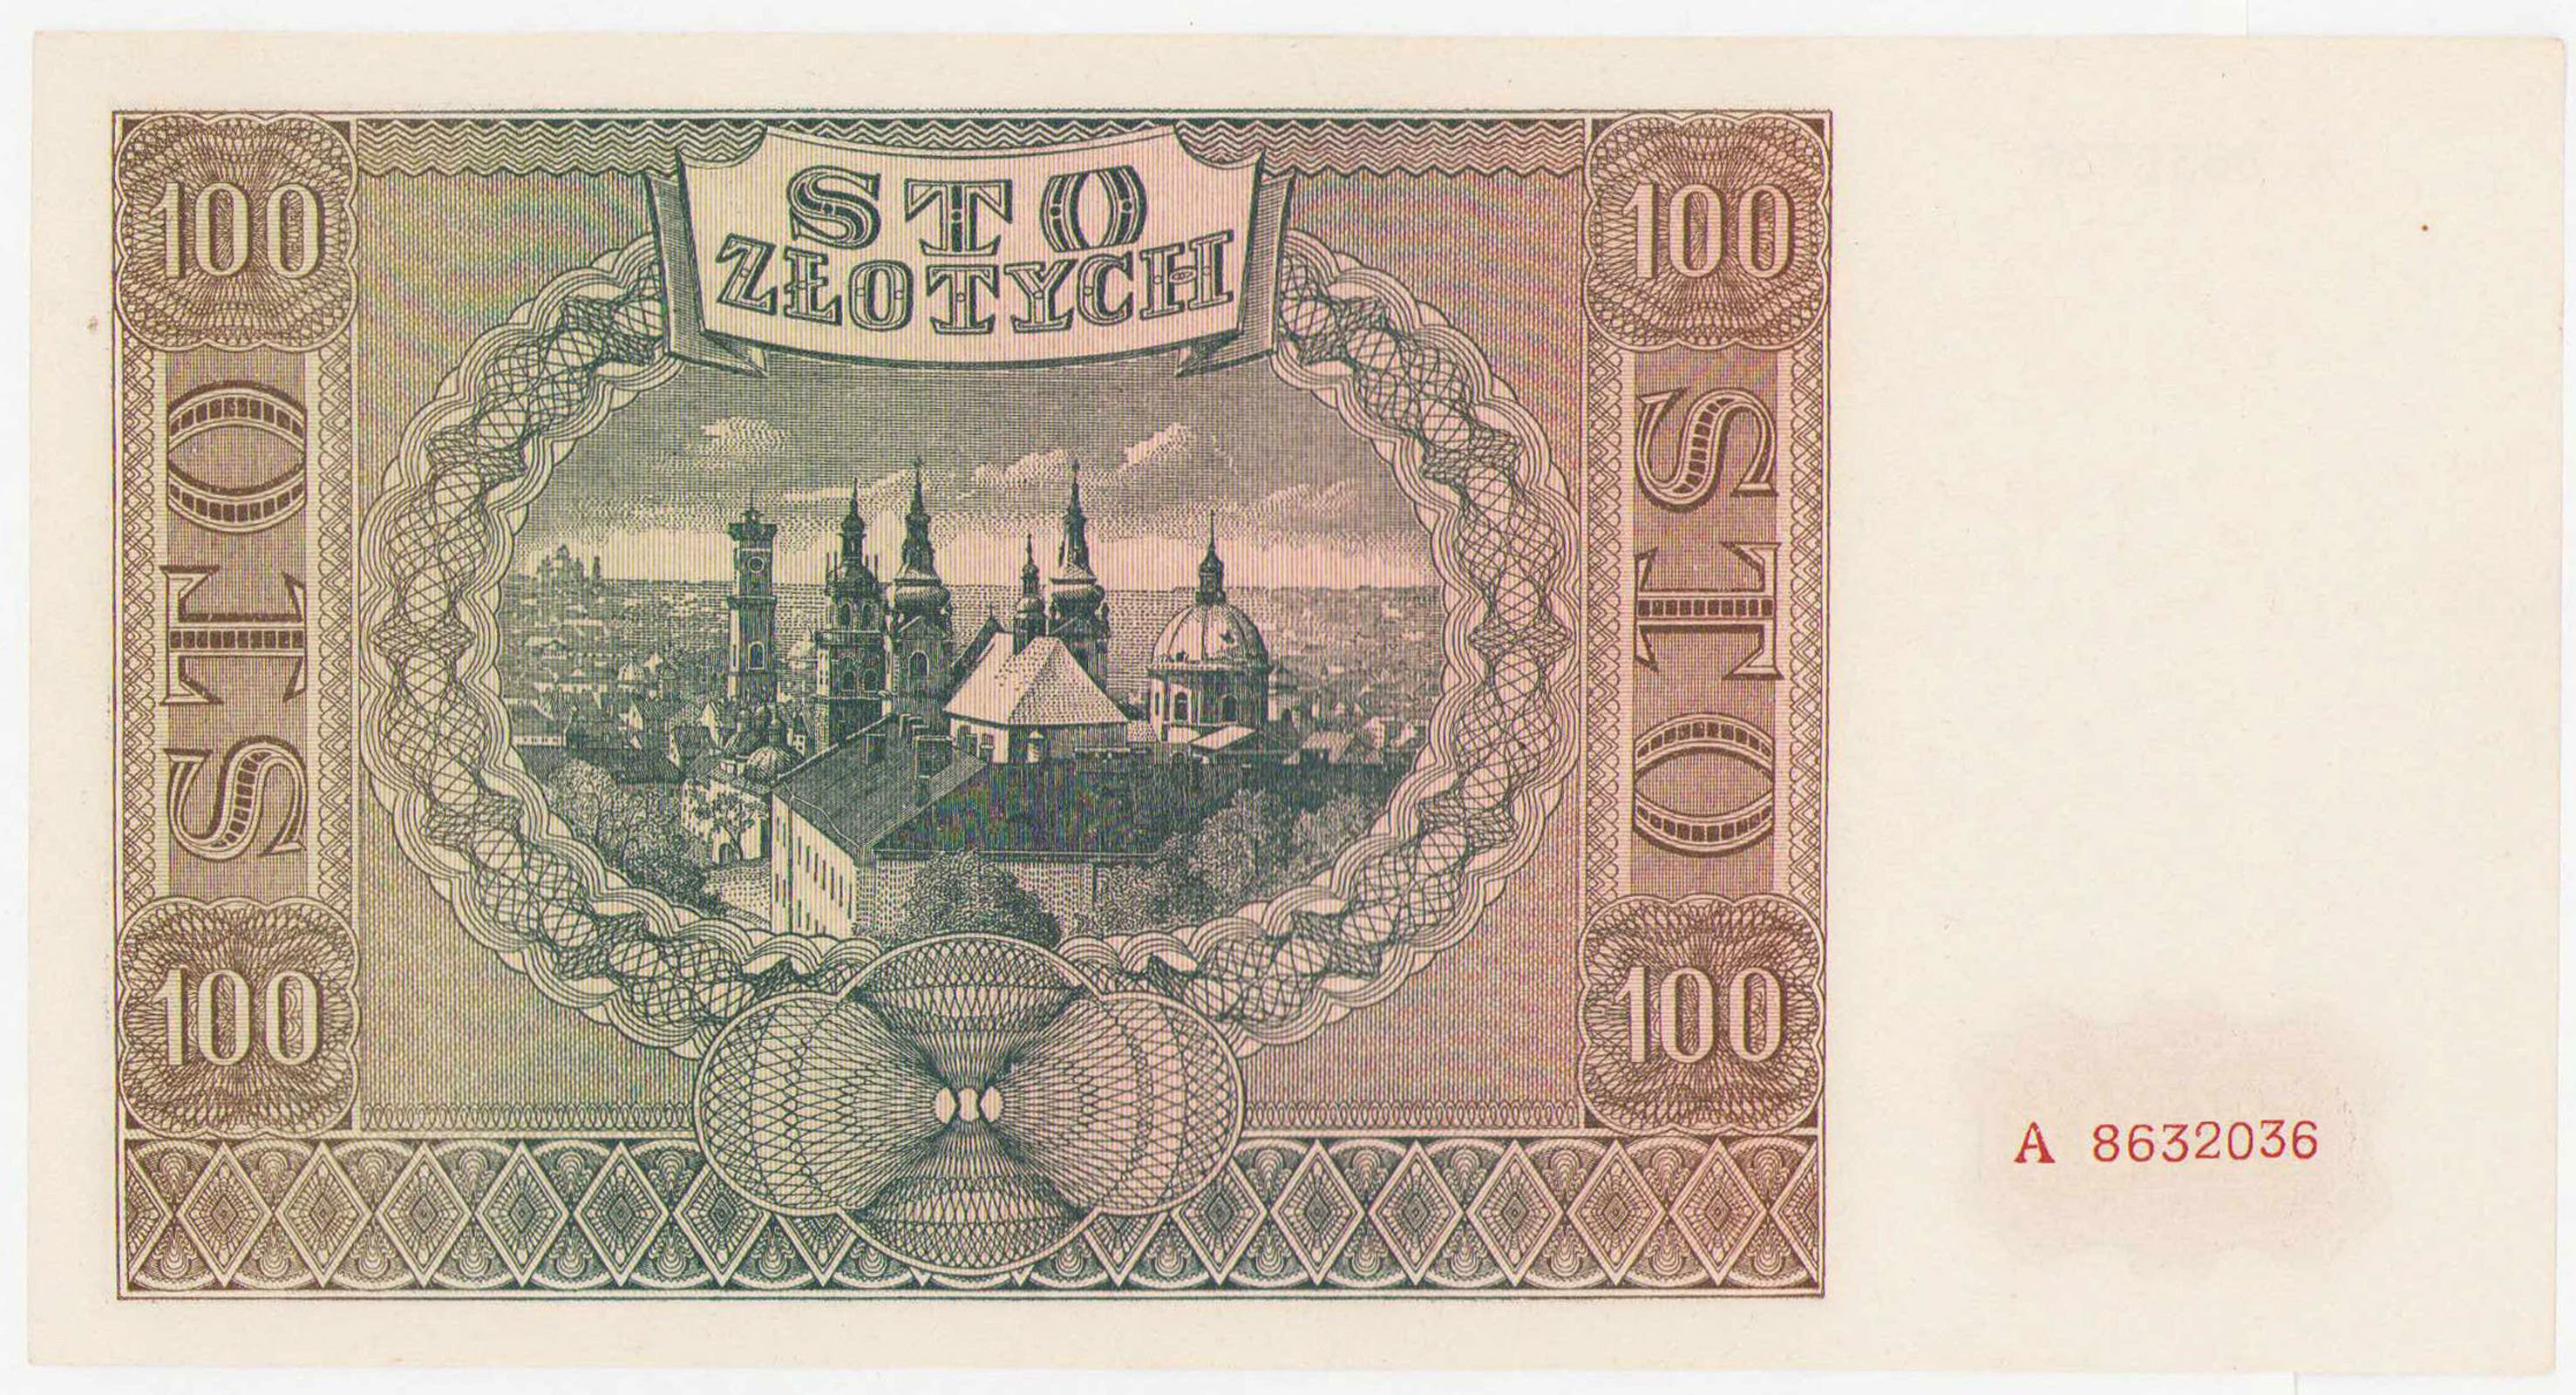 100 złotych 1941 seria A